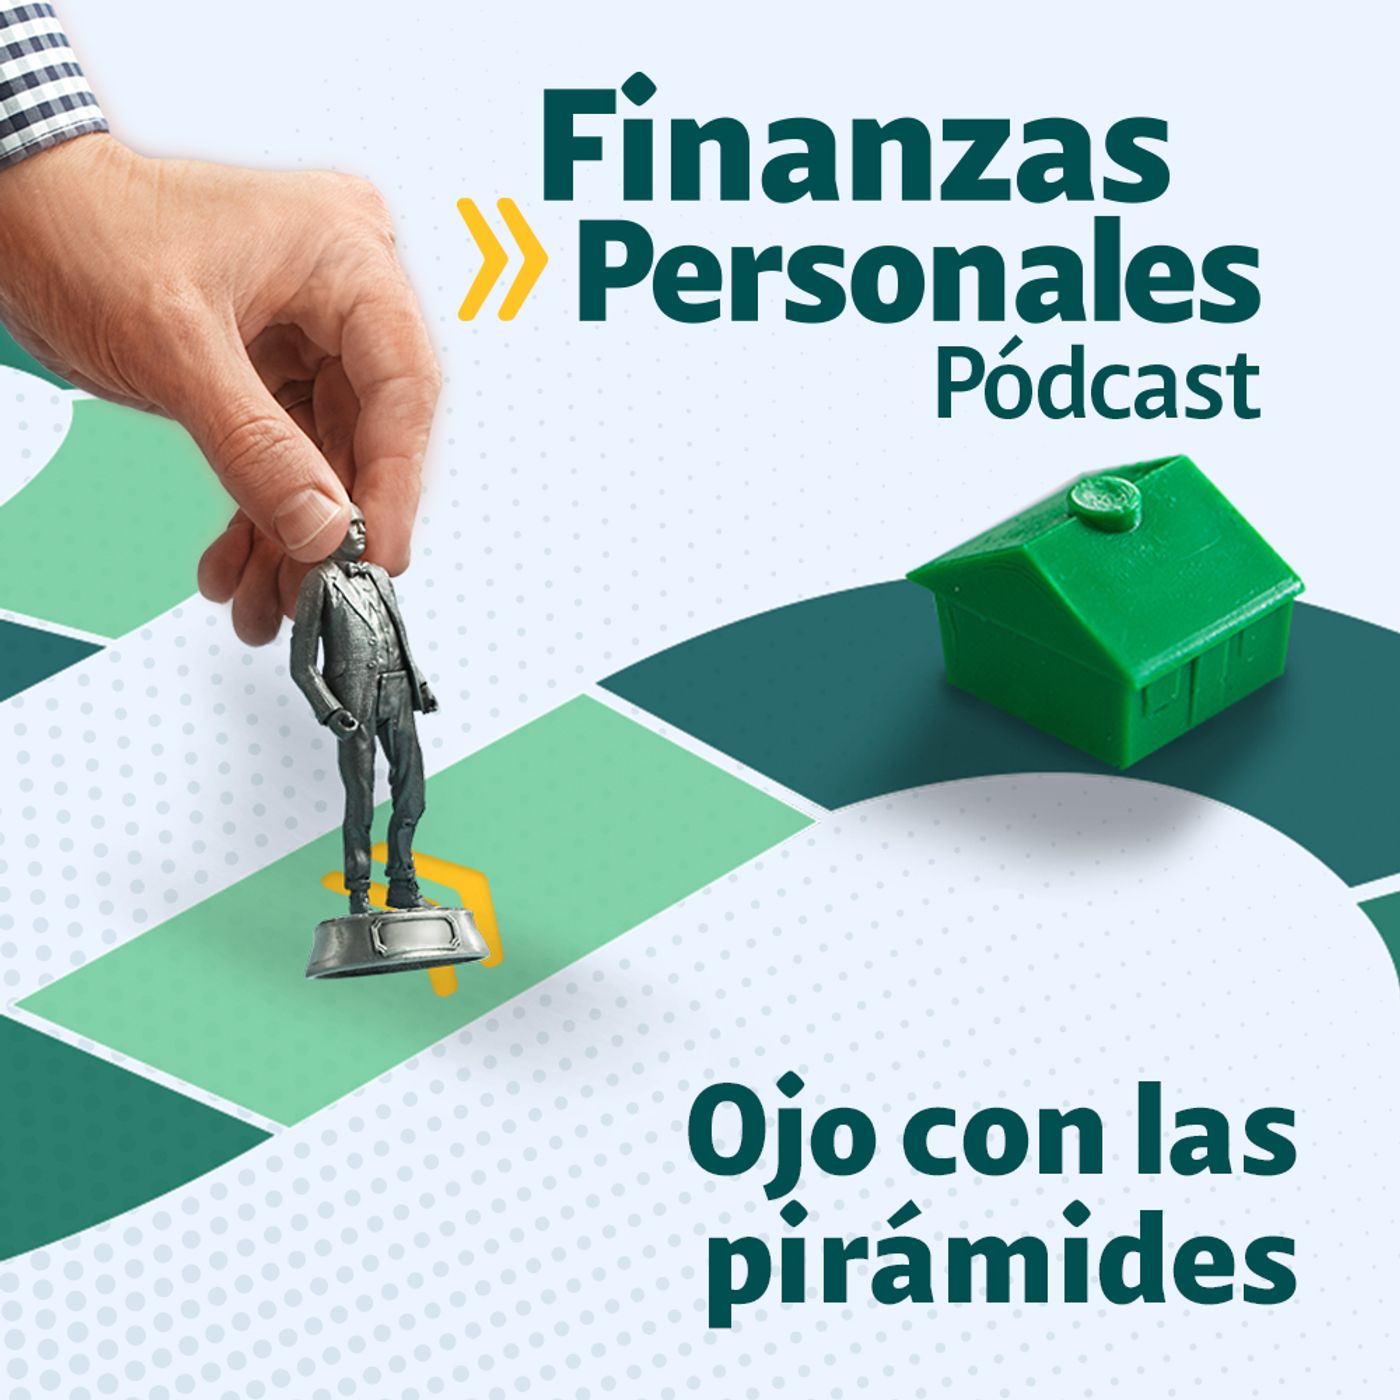 Finanzas Personales: Pirámides: ¿Cómo saber si su inversión no es confiable?